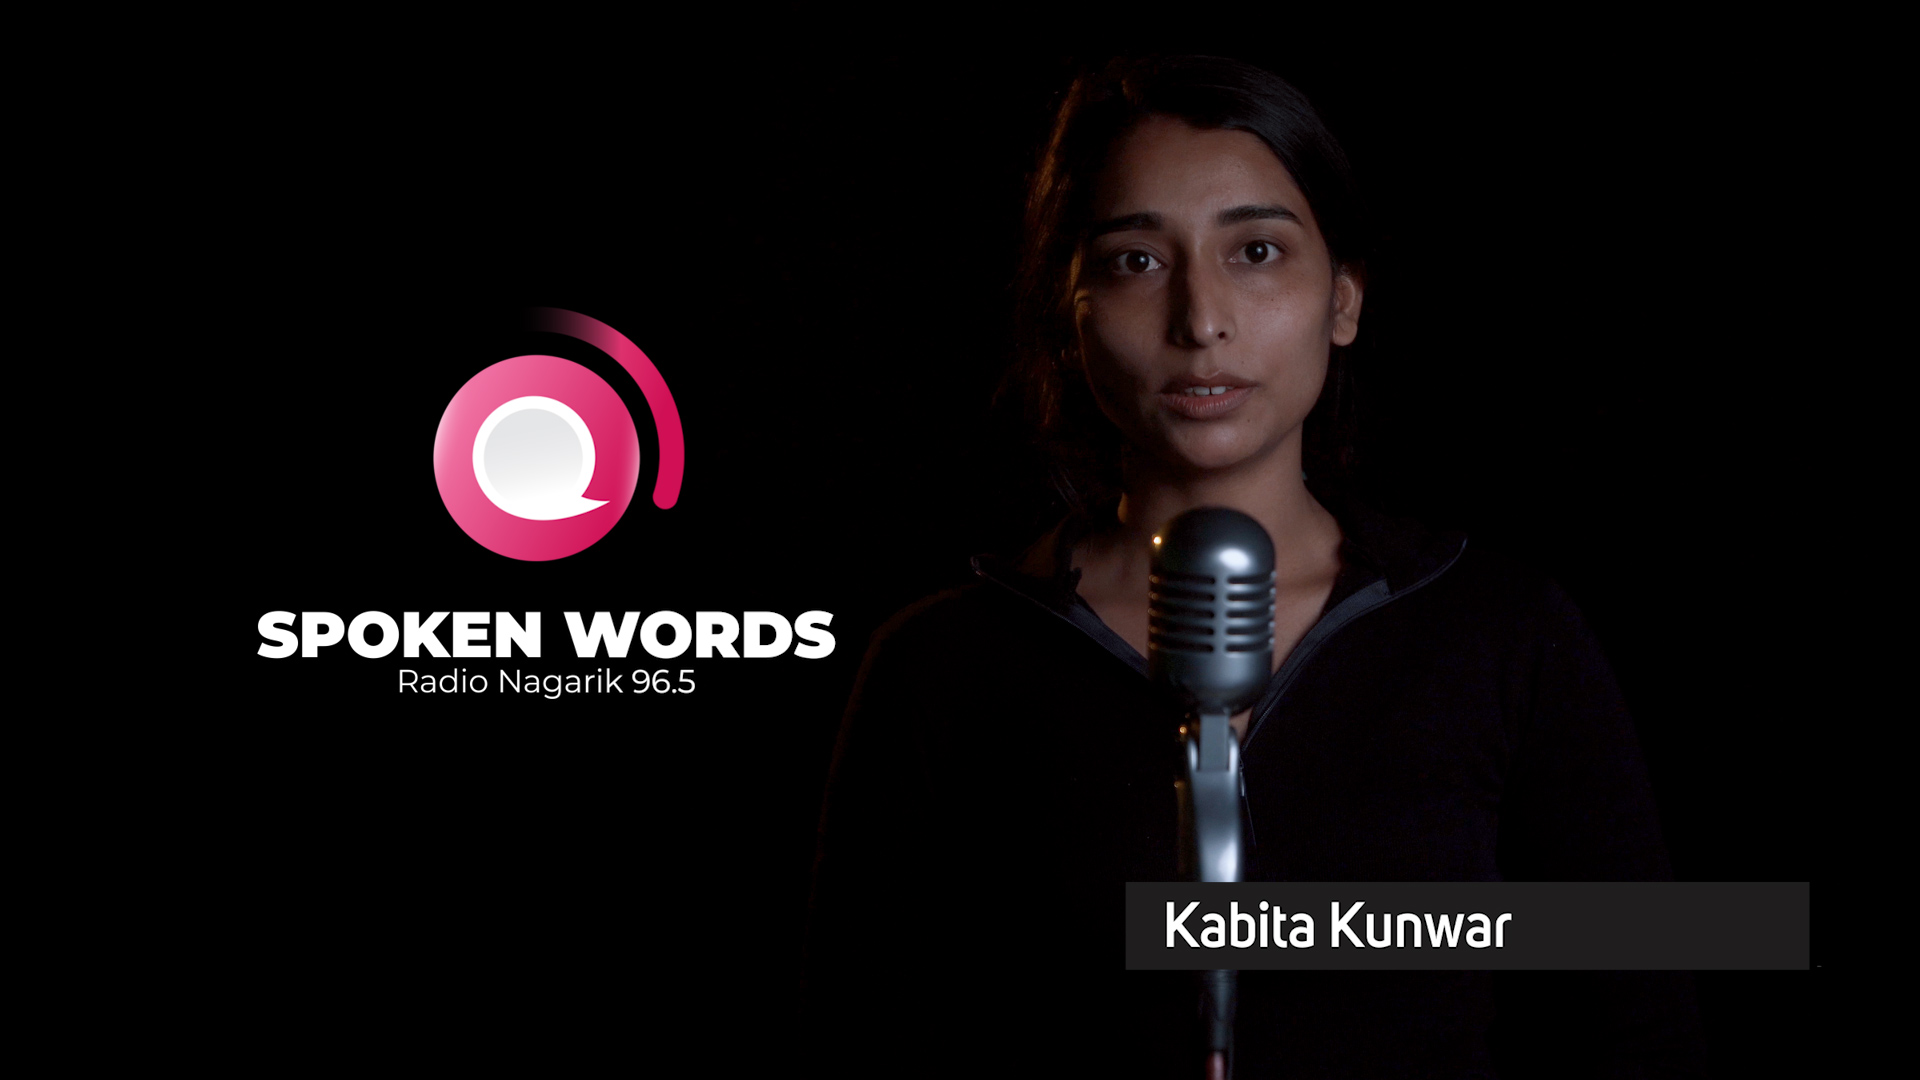 Bibeksheel / Spoken Words performed by  Kabita Kunwar | Slam Poetry Nepal